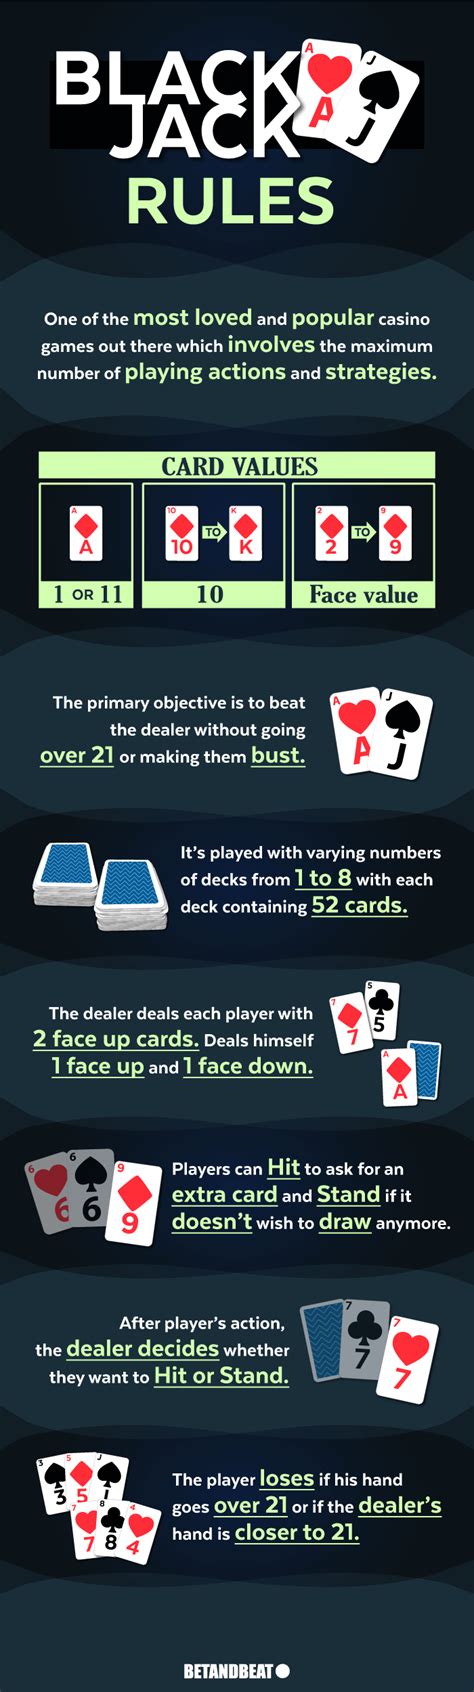 blackjack card games rules ssec canada